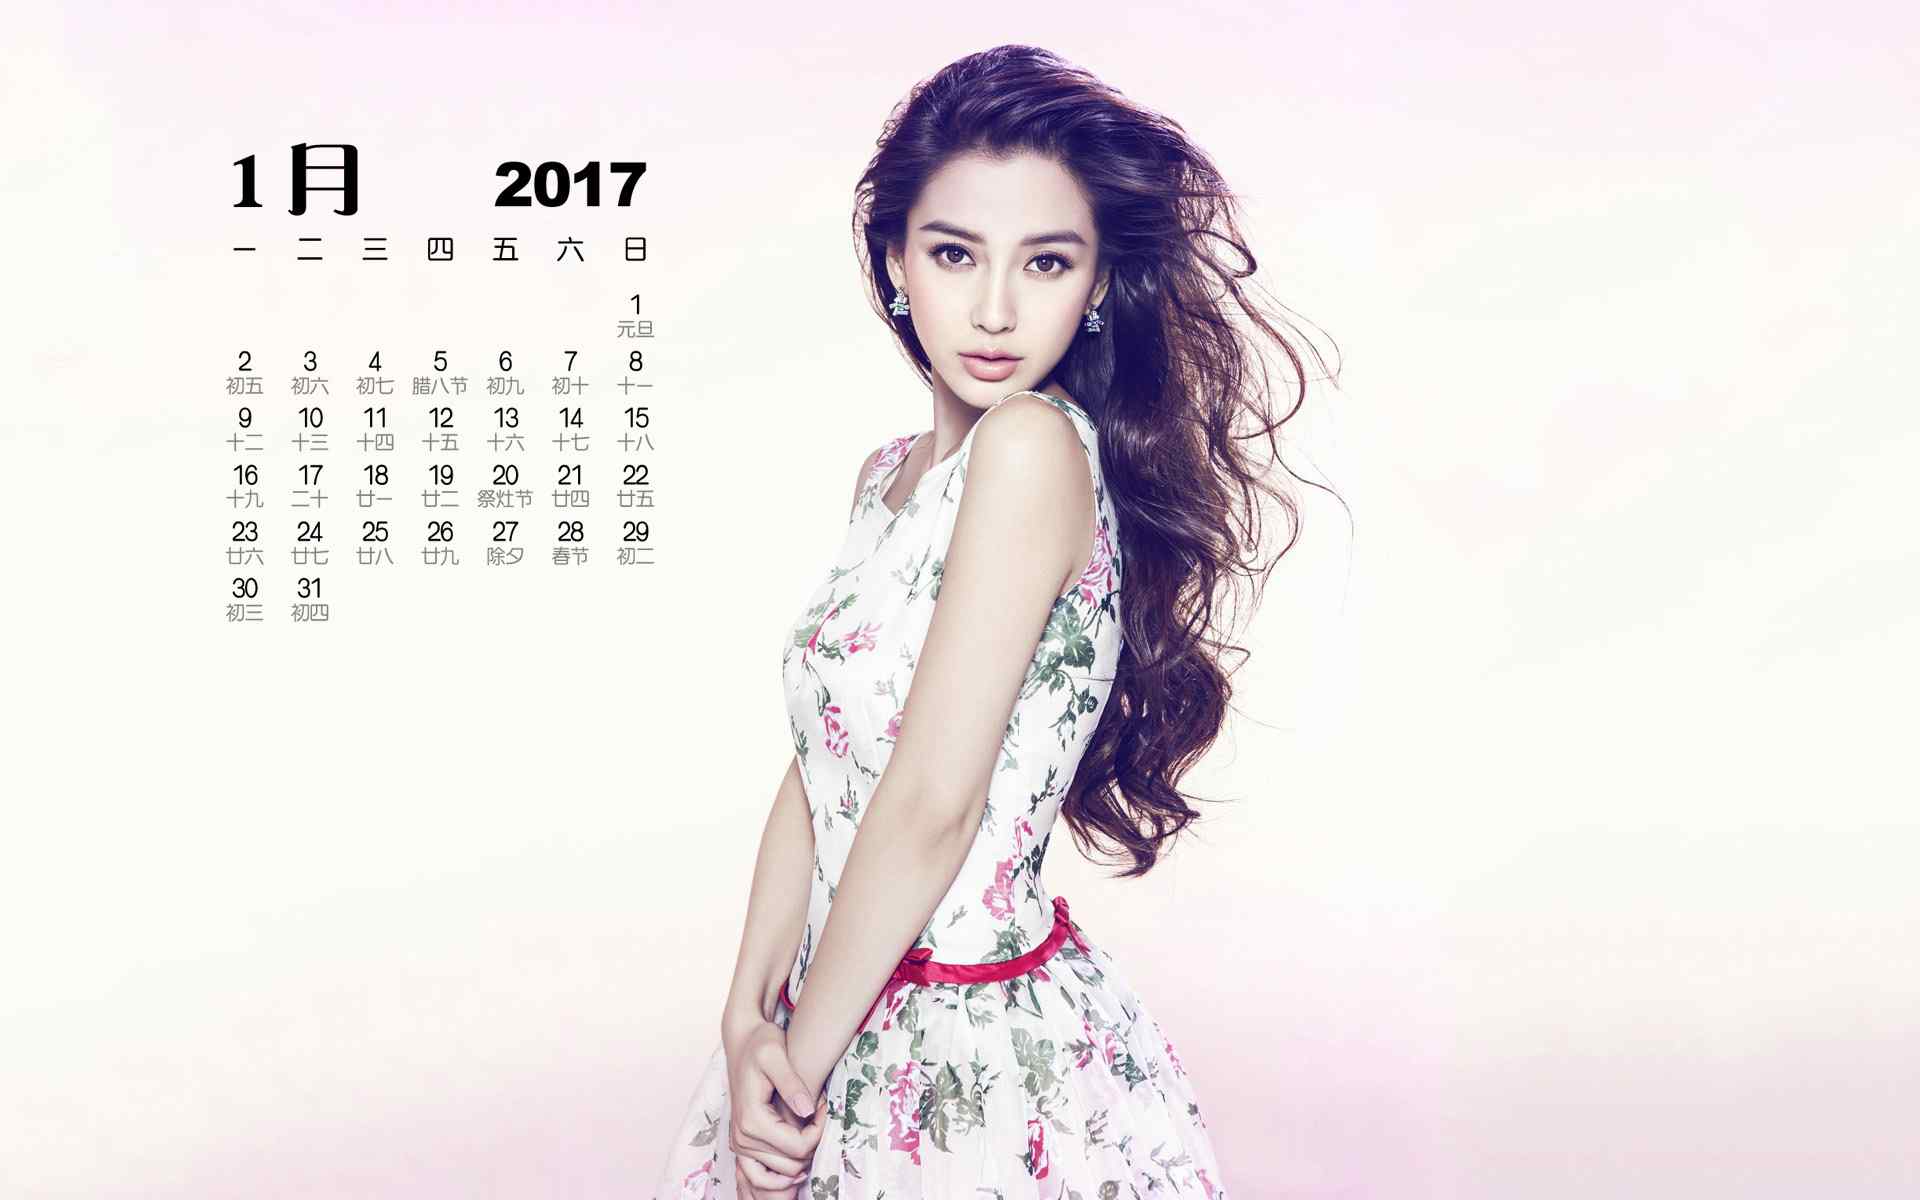 2017年1月日历美女明星时尚写真高清桌面壁纸